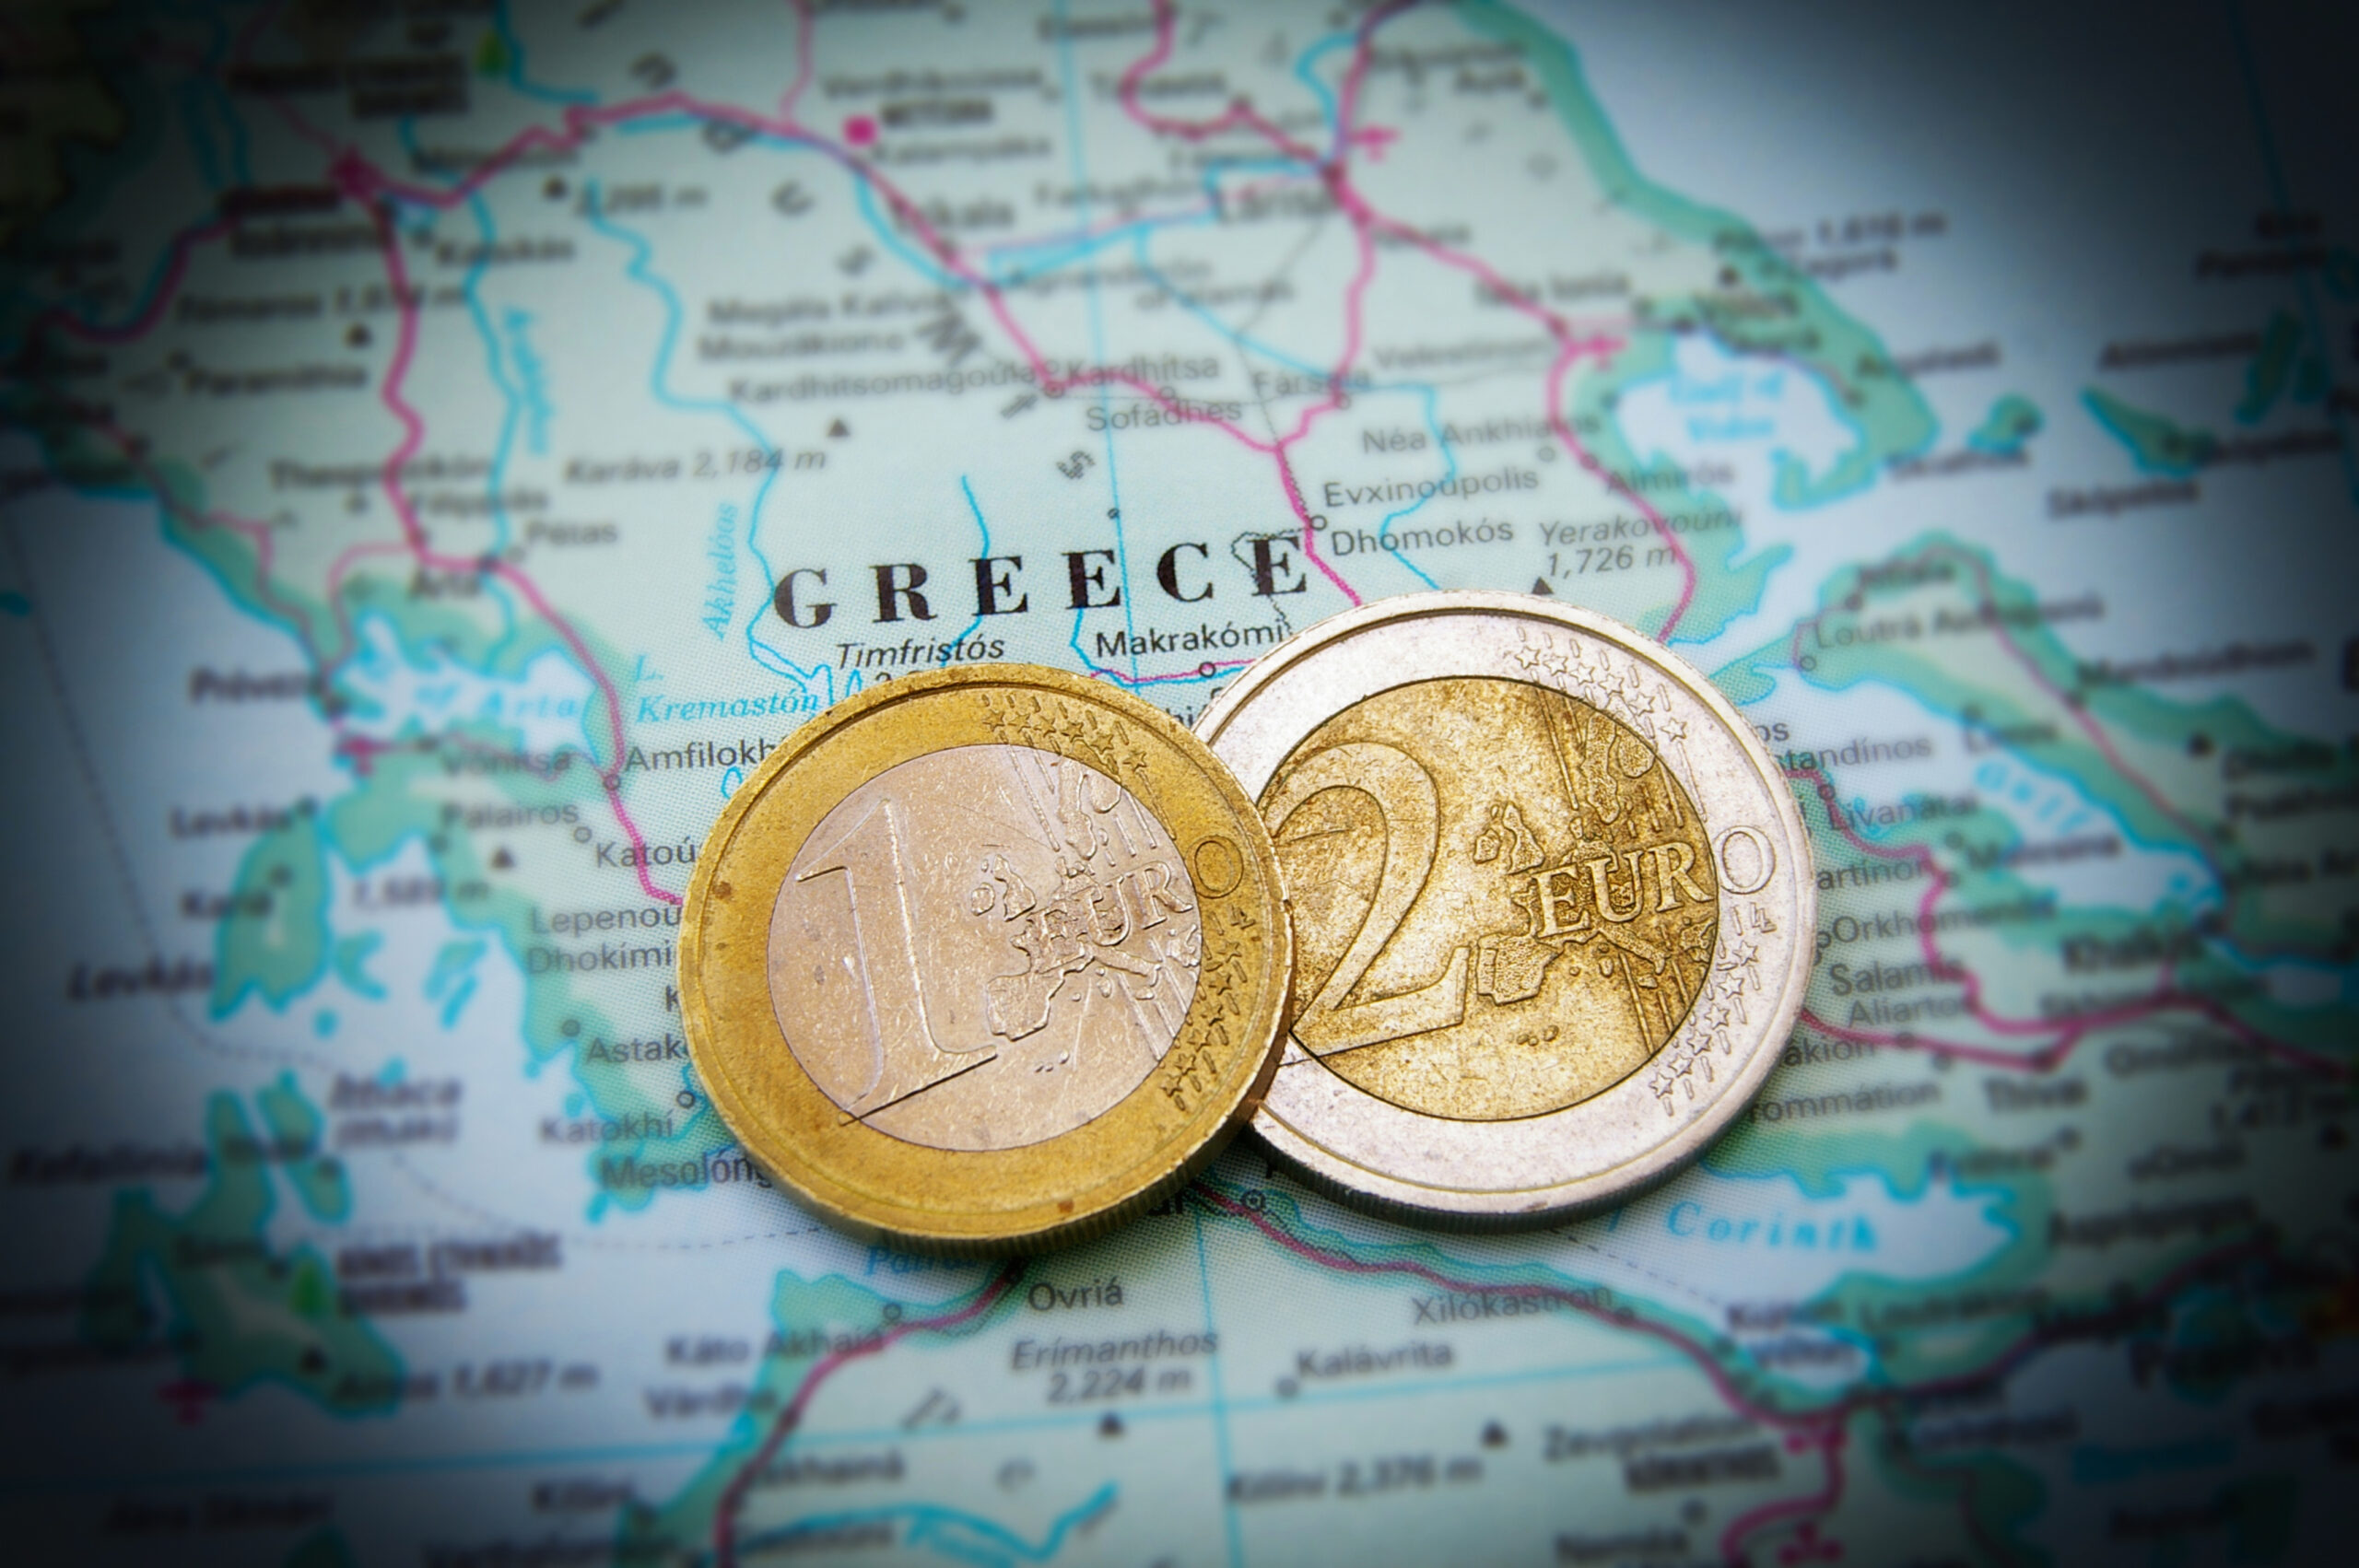 La sfârșitul anului 2009, economia Greciei a intrat în colaps. Sursa foto: Dreamstime